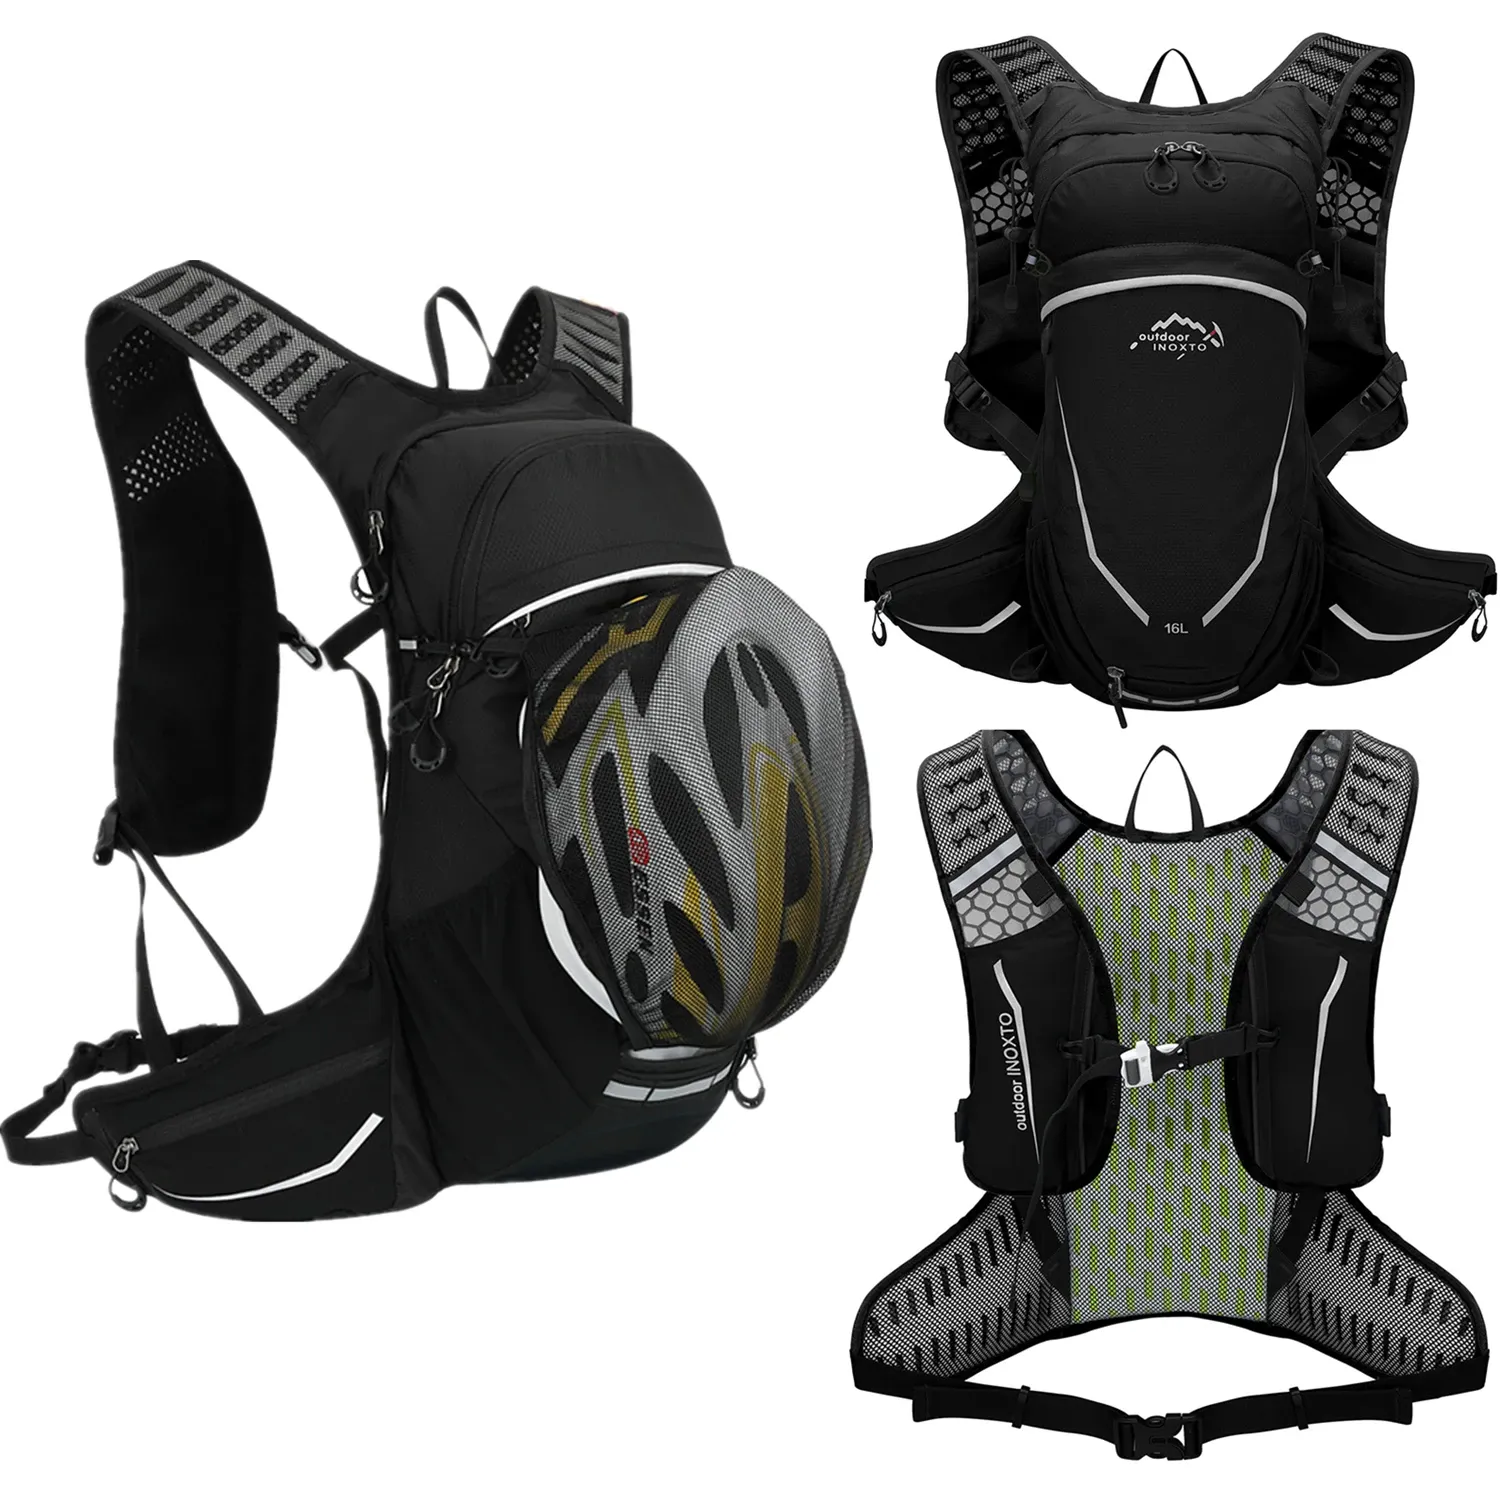 バッグアウトドアスポーツ超軽量バックパック16L、ランニング、潤い、ハイキング、サイクリング、2Lのウォーターバッグ